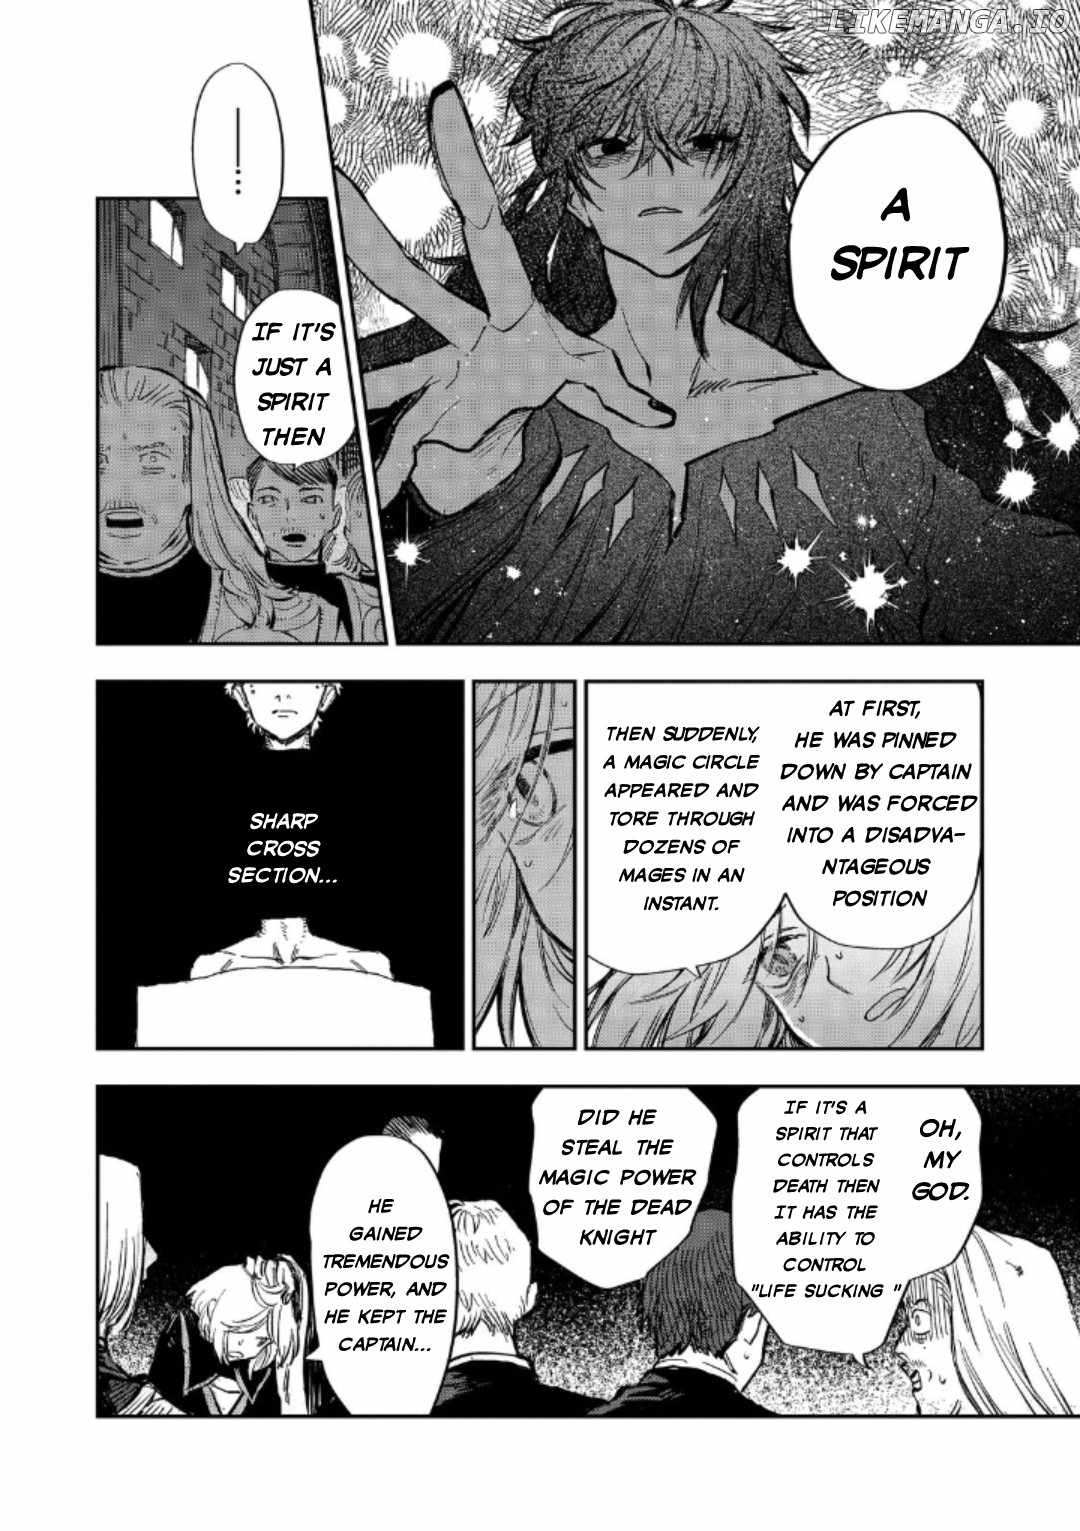 Meiou-sama ga Tooru no desu yo! Chapter 13-eng-li - Page 10